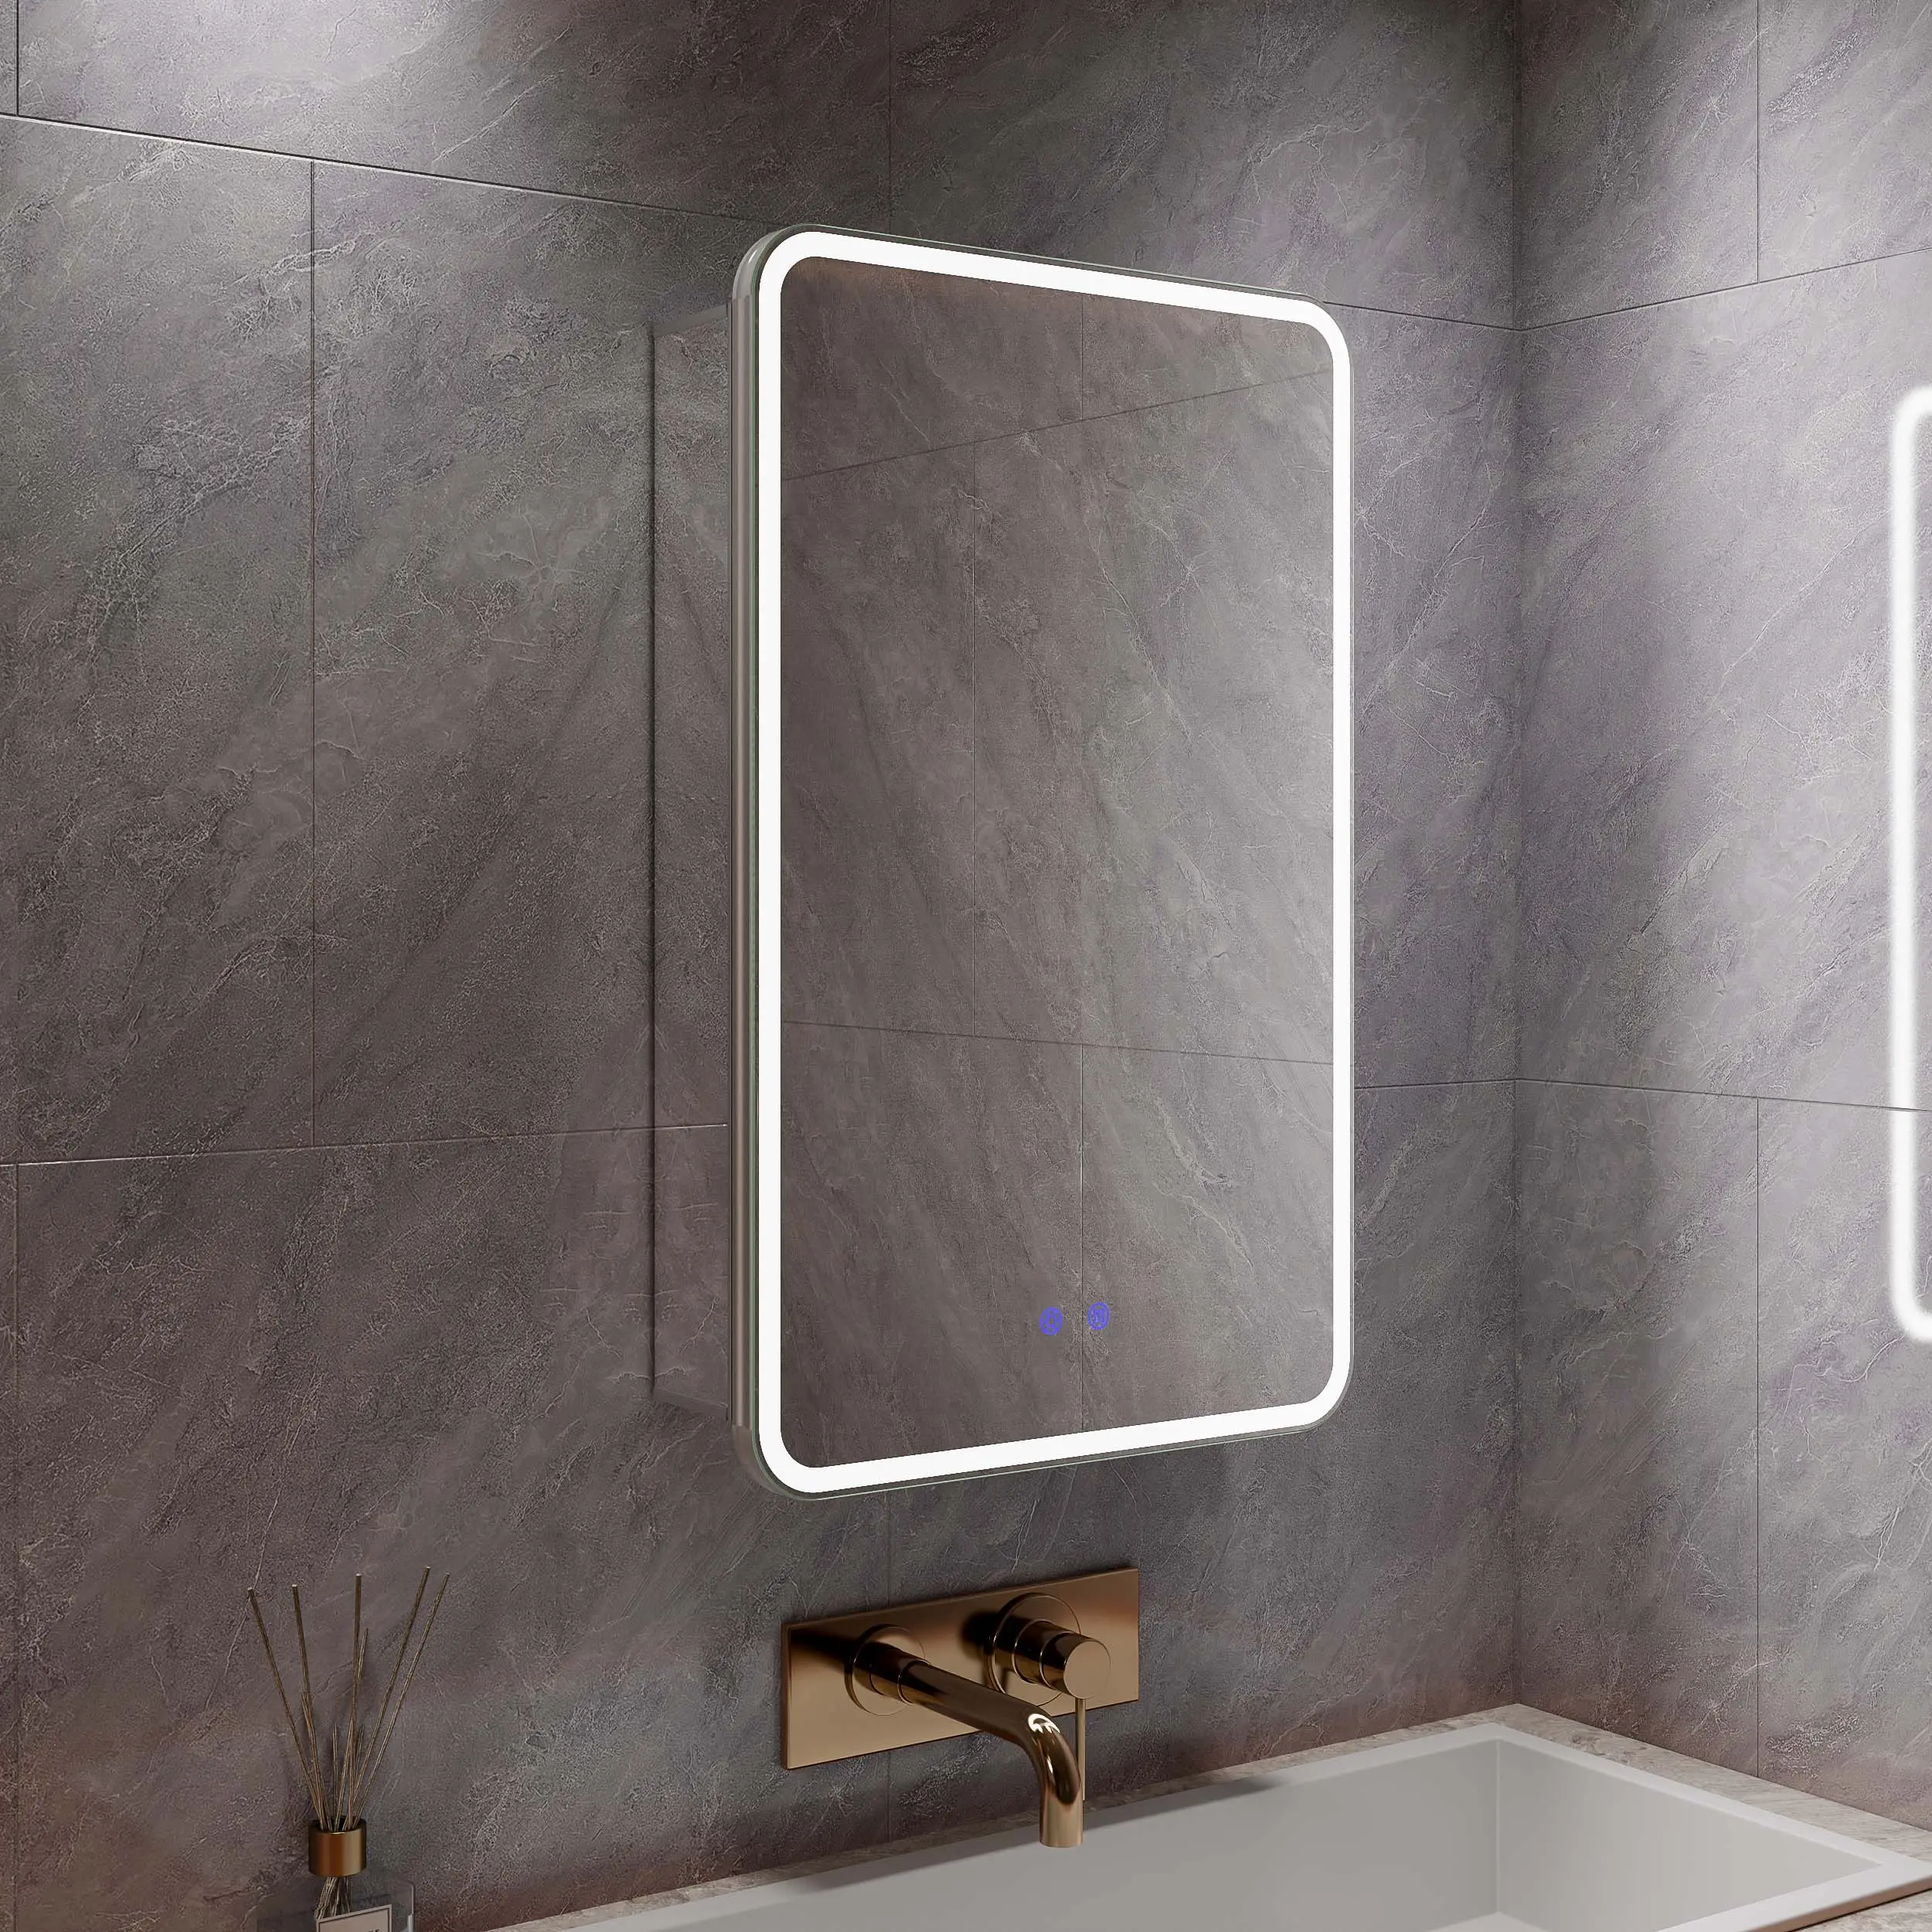 Bề mặt gắn kết ánh sáng lên defogger cảm ứng hiện đại chuyển đổi y học frontlit nhà vệ sinh dẫn tủ phòng tắm với Đèn gương